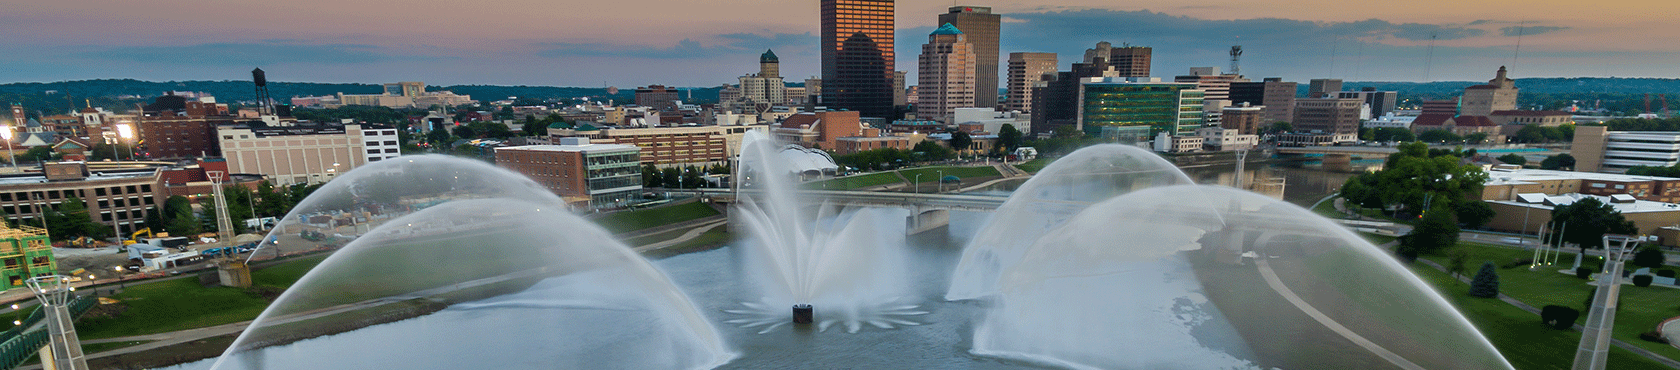 Dayton fountain and skyline